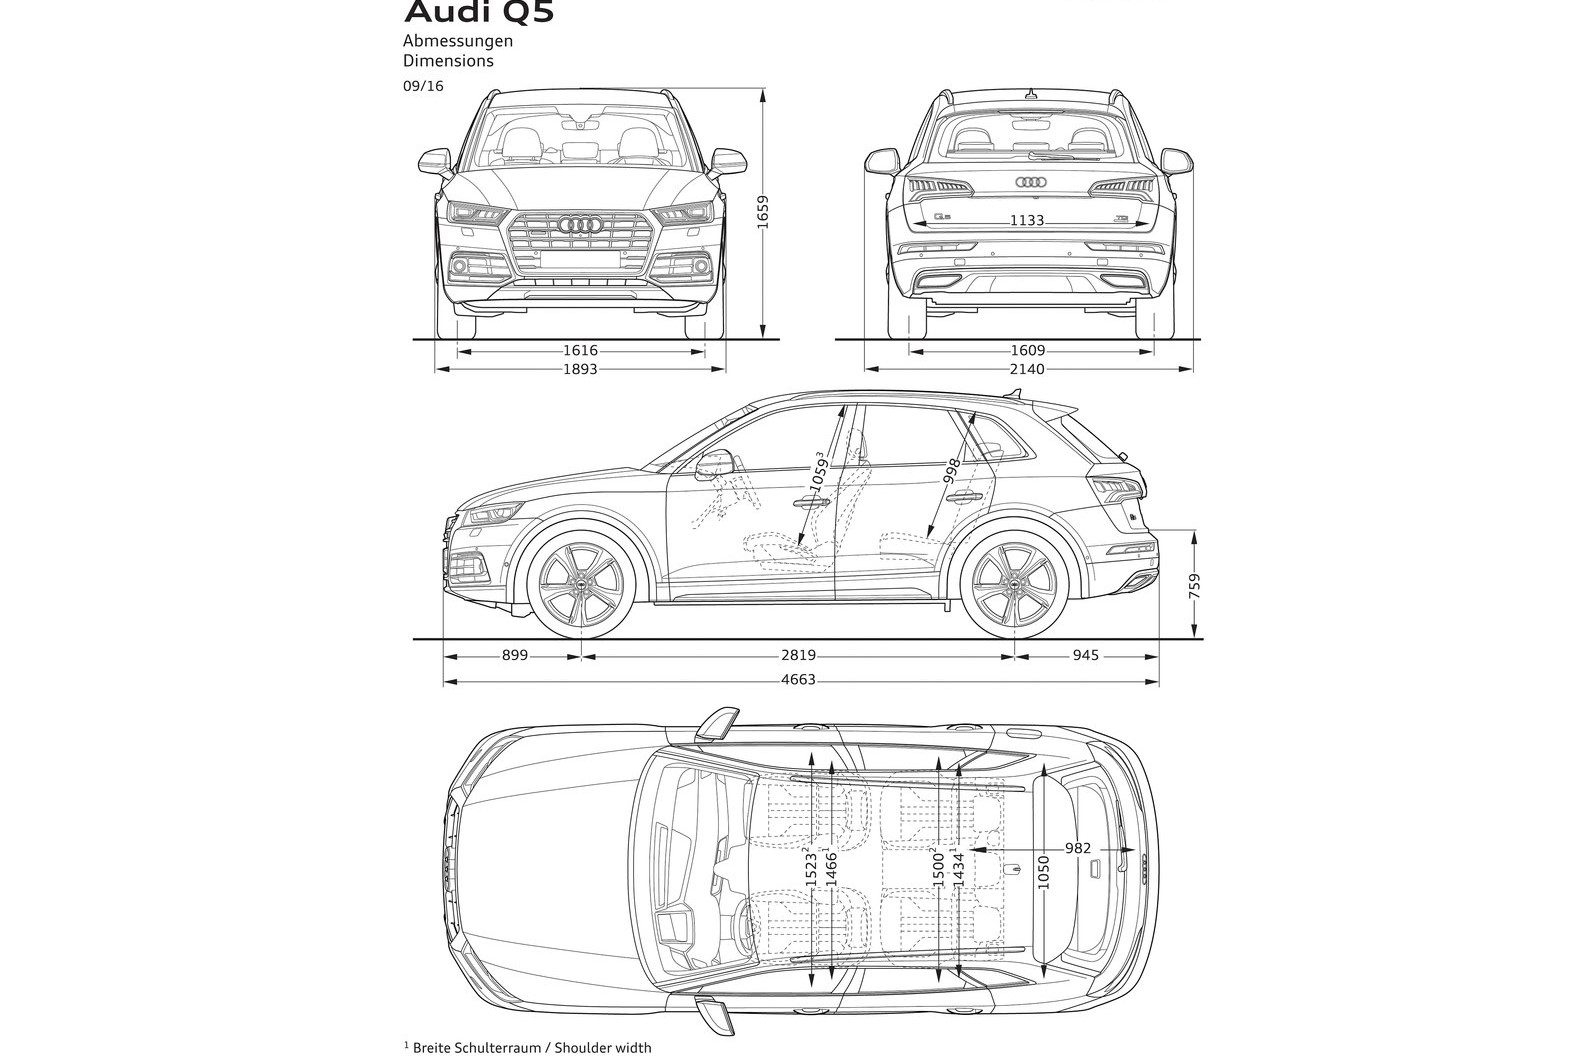 Premiera Audi Q5 drugiej generacji | Fleet.com.pl